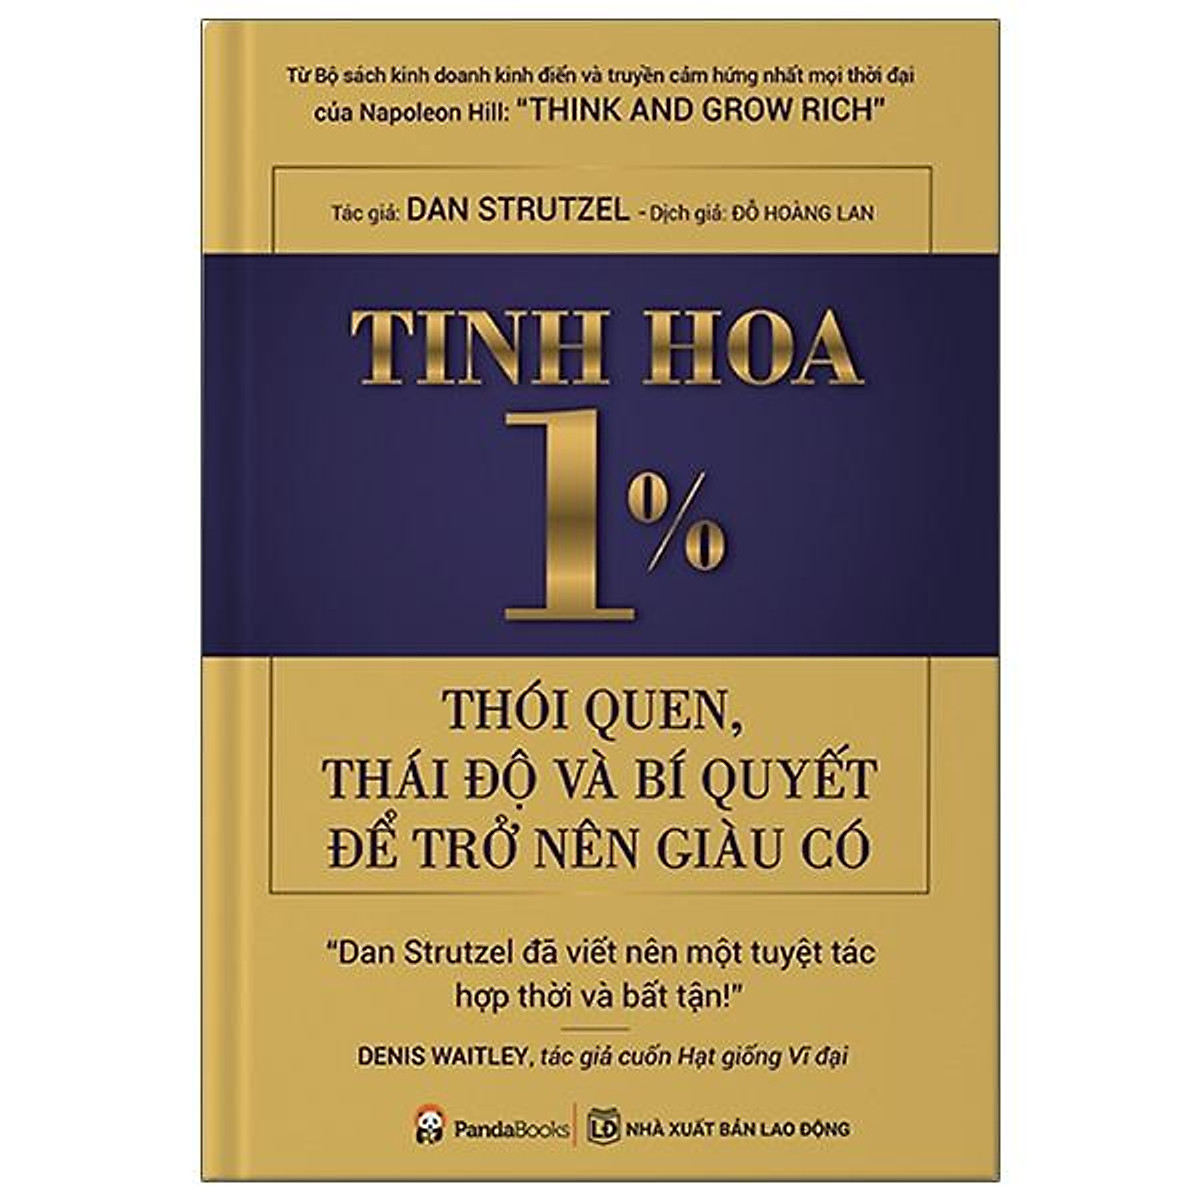 Tinh Hoa 1% - Thói Quen, Thái Độ Và Bí Quyết Để Trở Lên Giàu Có ebook PDF-EPUB-AWZ3-PRC-MOBI